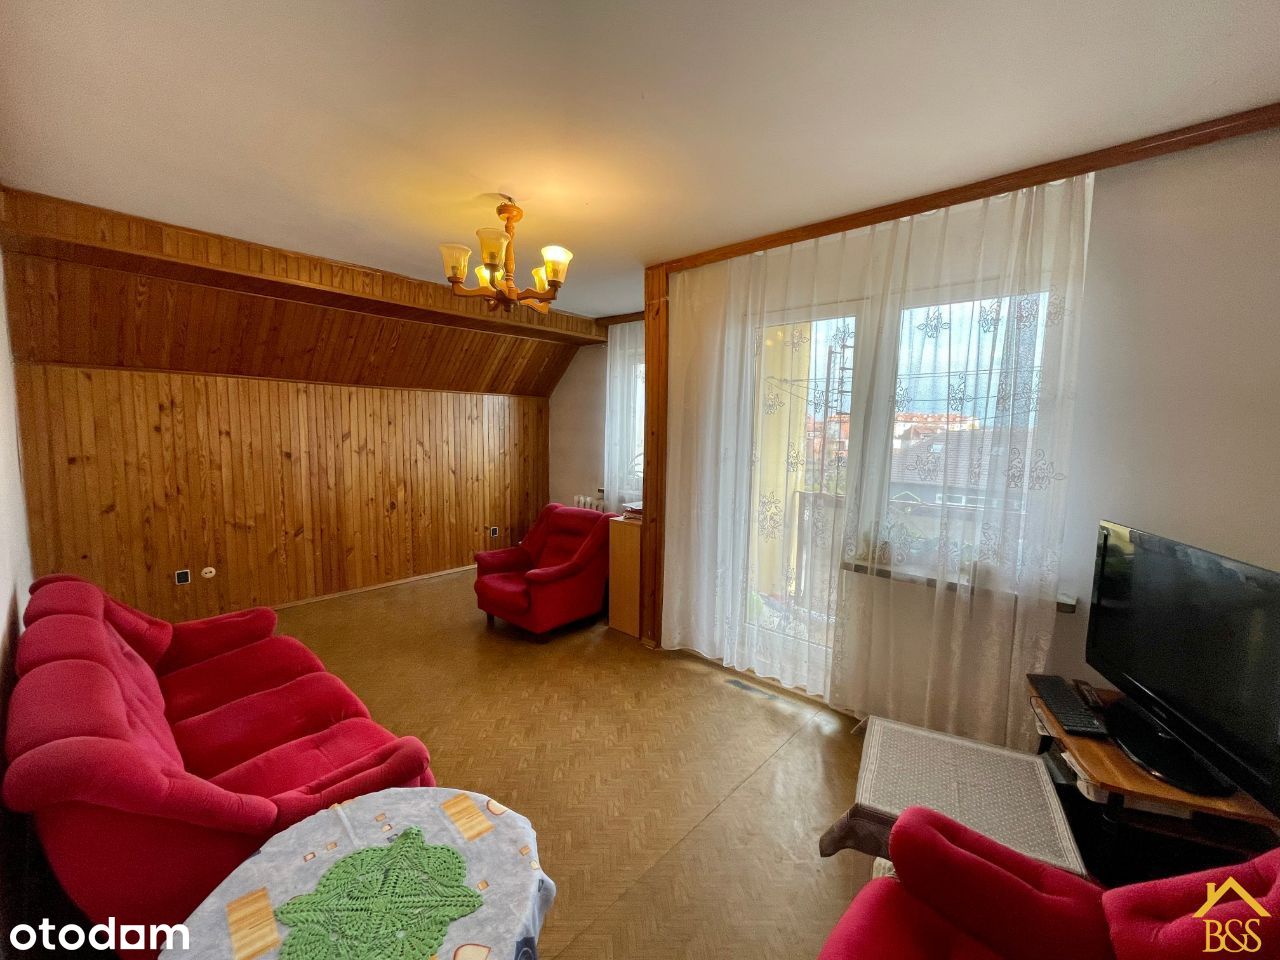 Mieszkanie 4 pokojowe w Braniewie.